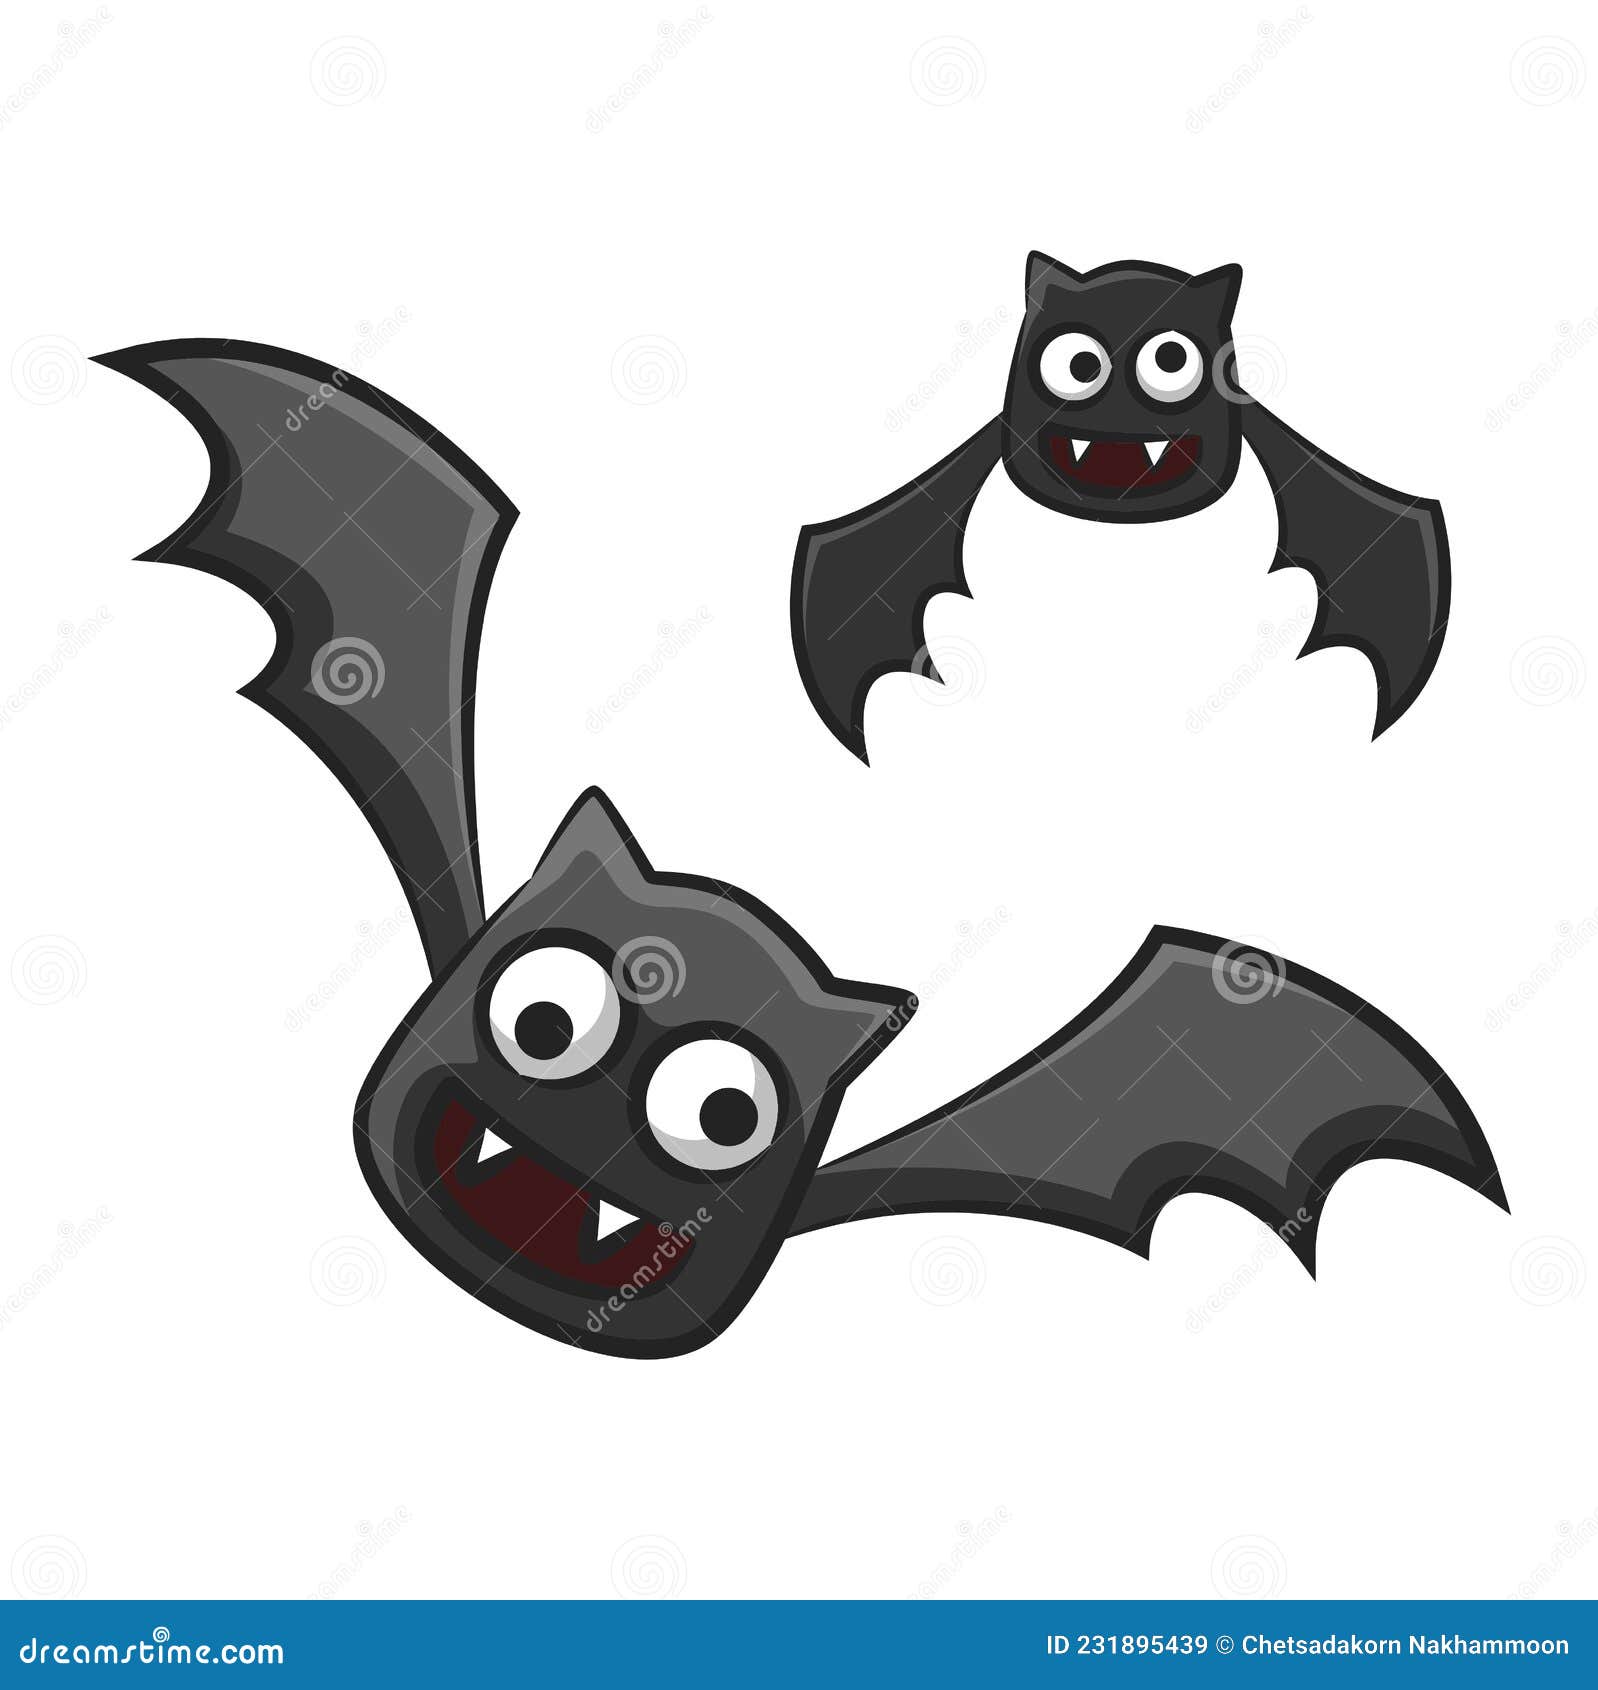 Desenho animado do morcego vampiro - Stockphoto #2618222